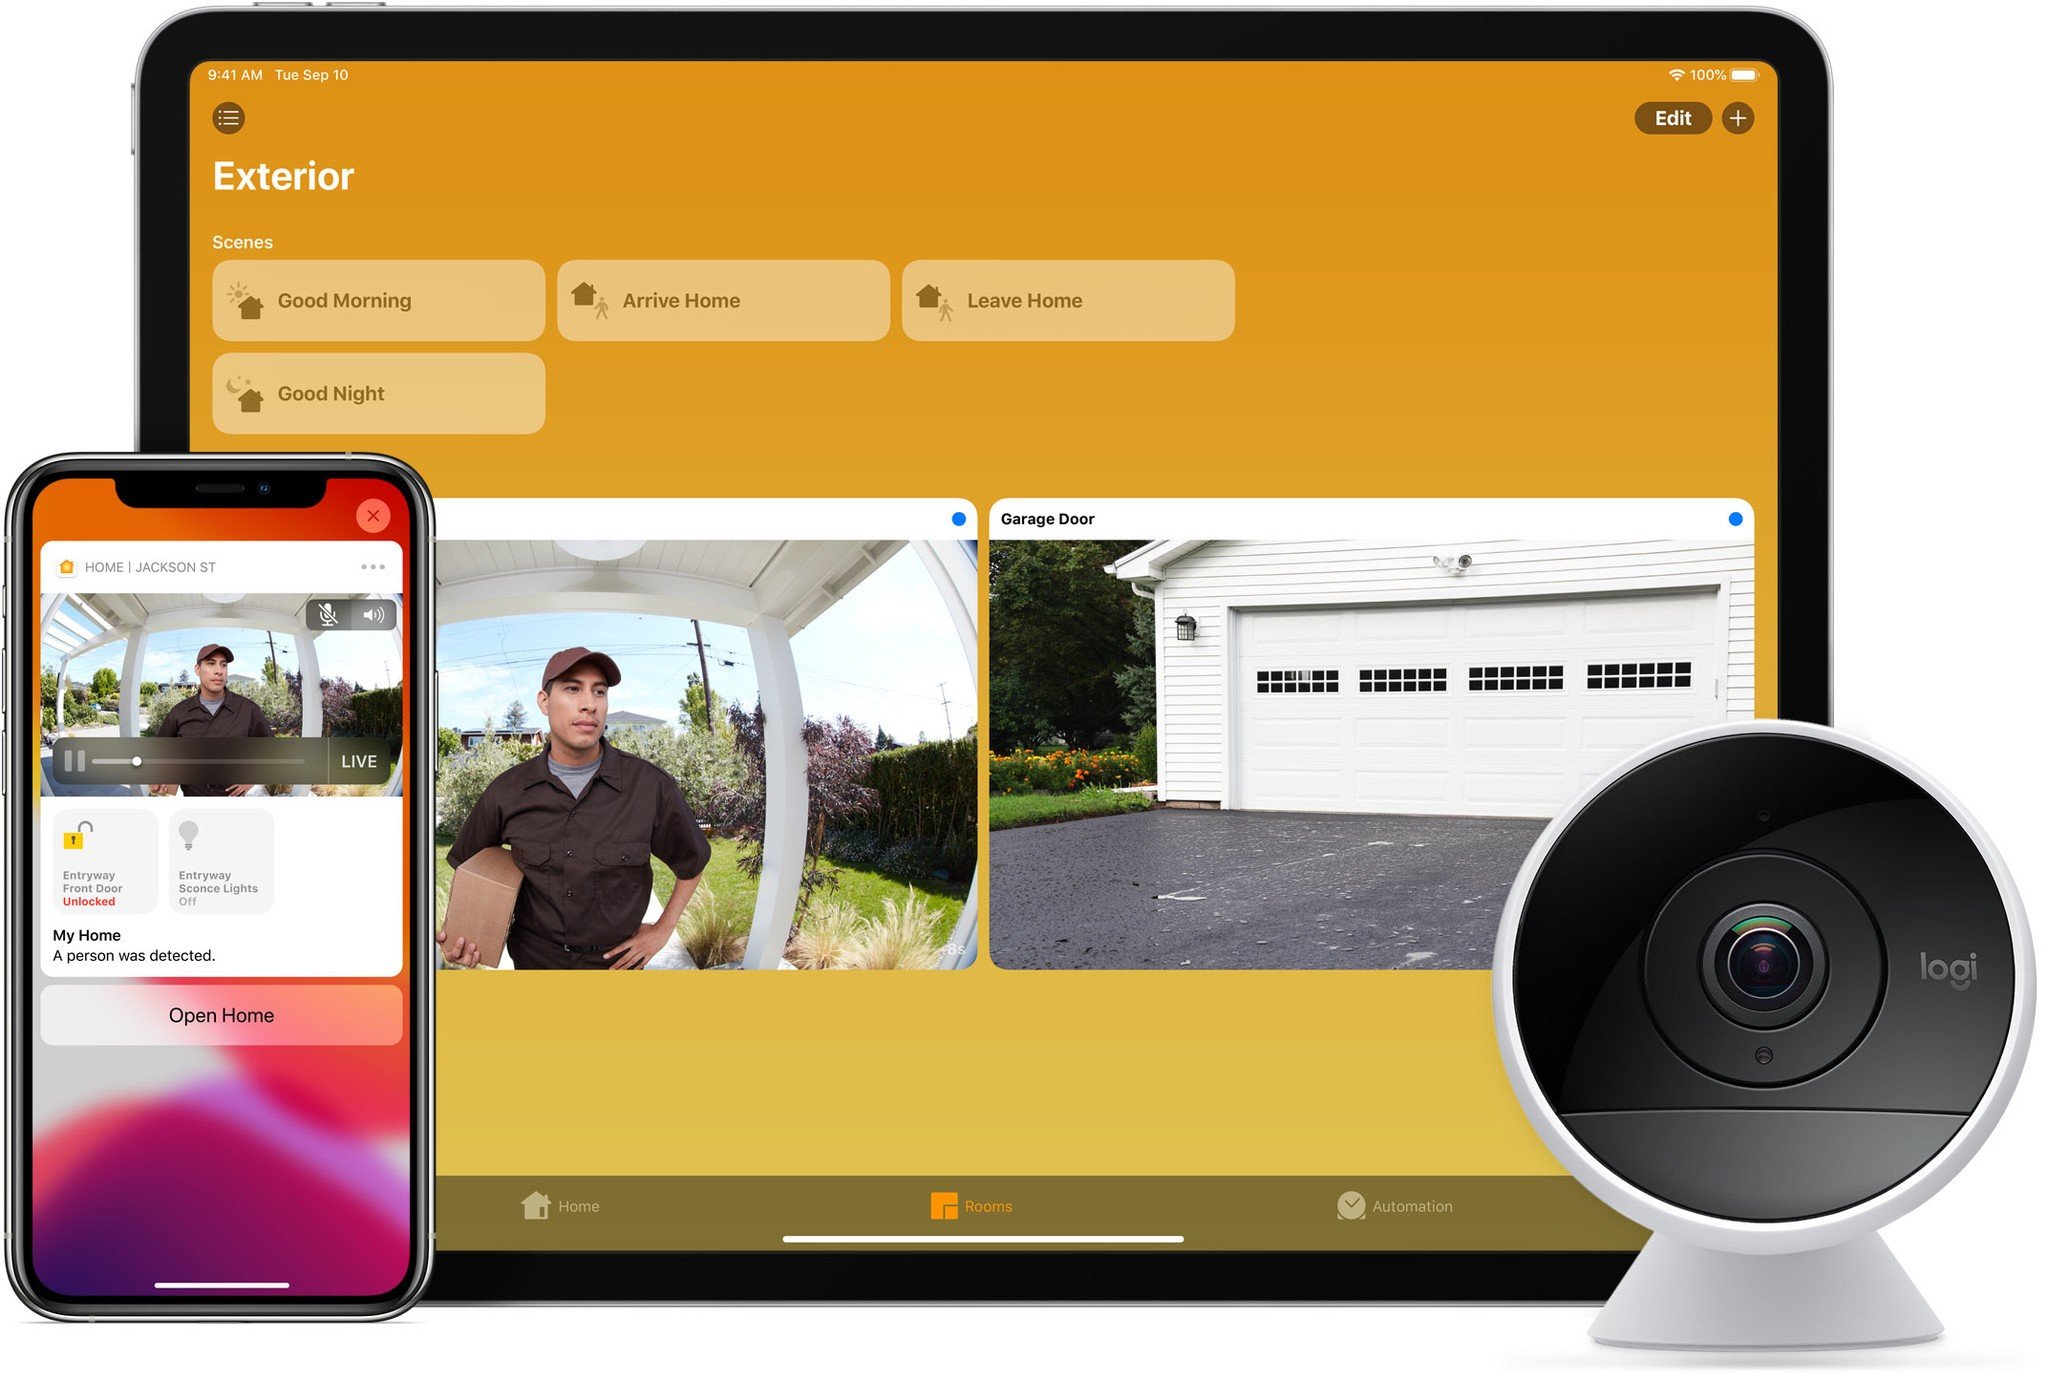 Netatmo adds support for HomeKitSecure Video in its Smart indoor